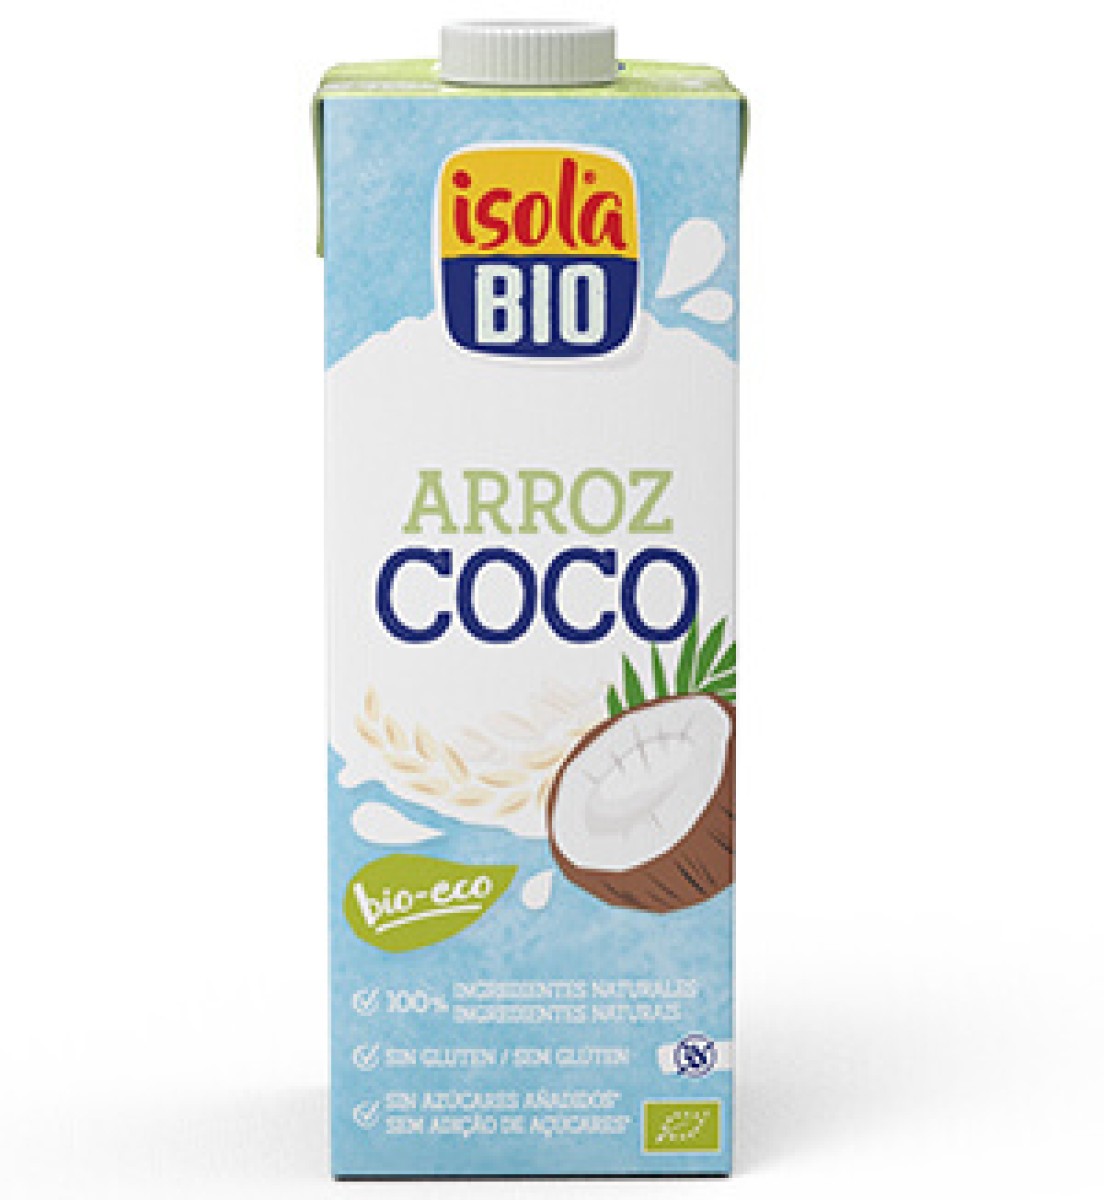 Bebida de Arroz com Coco Isola Bio